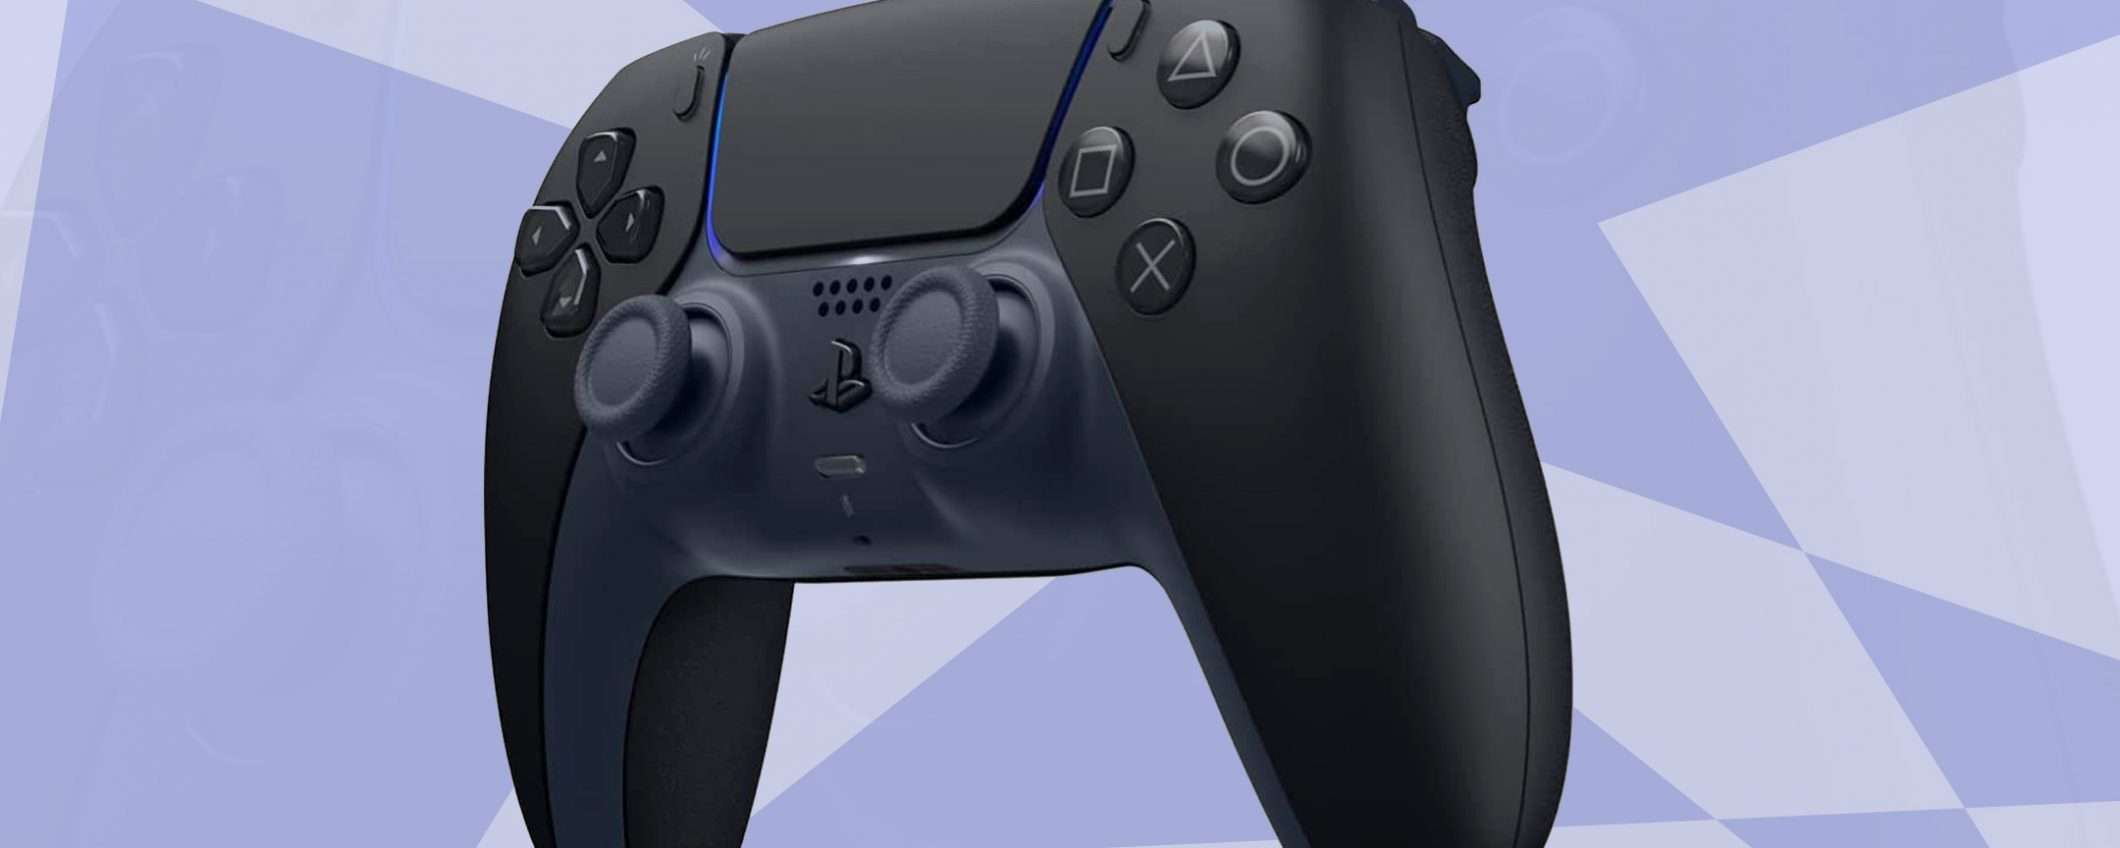 PS5: il controller DualSense ufficiale in SCONTO